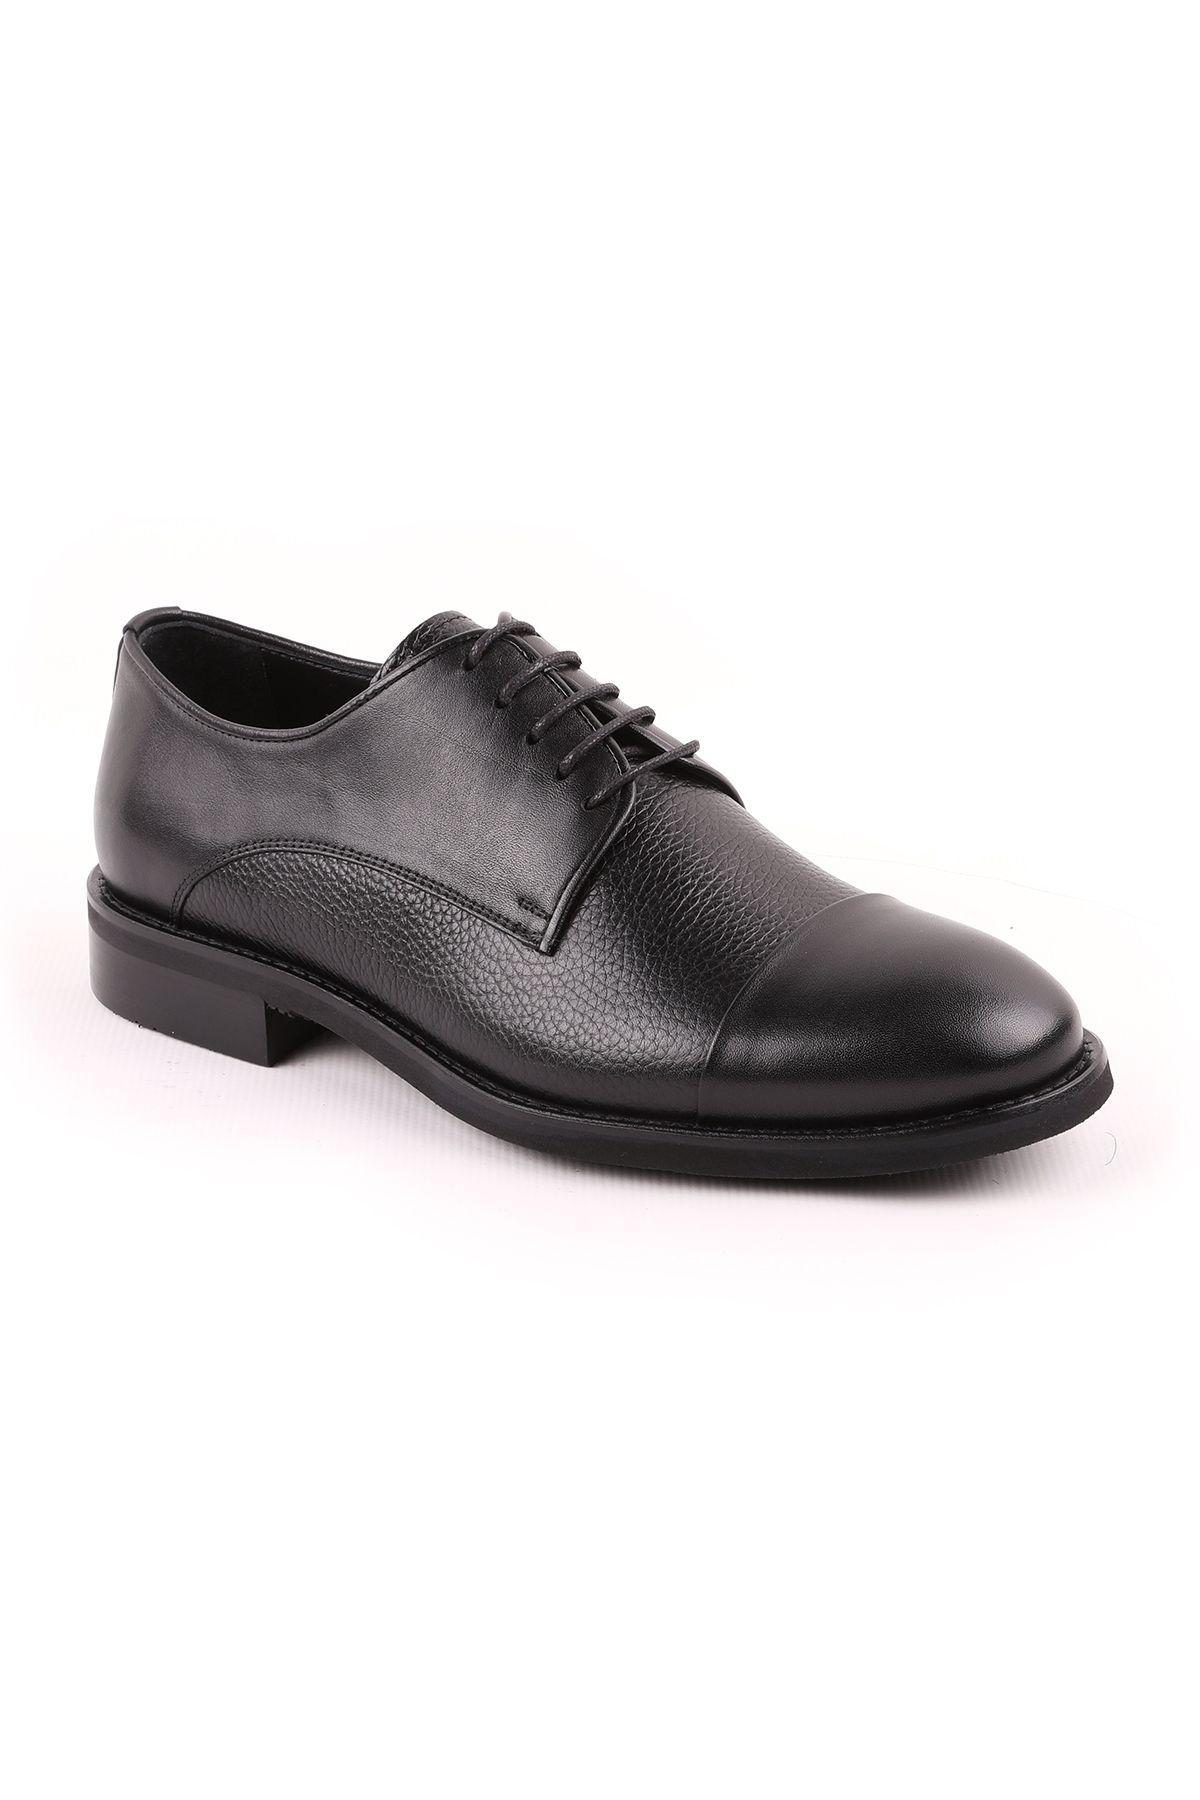 Libero L5096 Klasik Erkek Ayakkabı Siyah